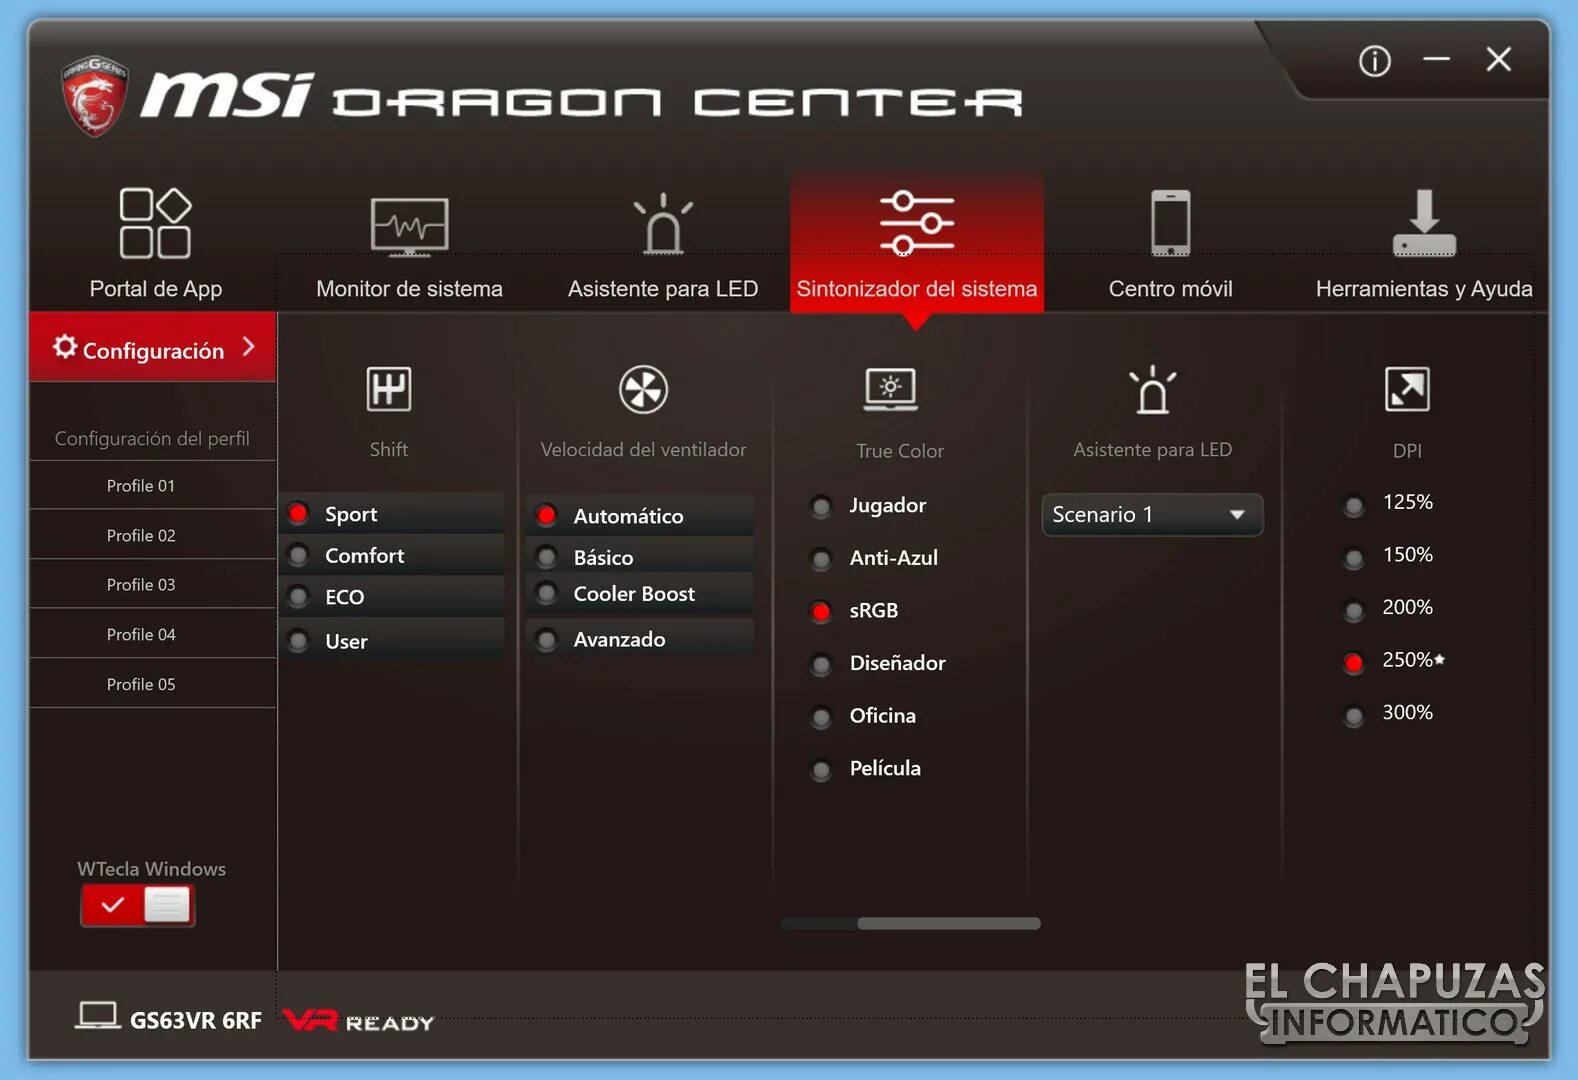 MSI Dragon Center 1050. MSI Dragon Center 2.0.126.0. MSI Center для ноутбука. MSI Dragon Center для ноутбука.